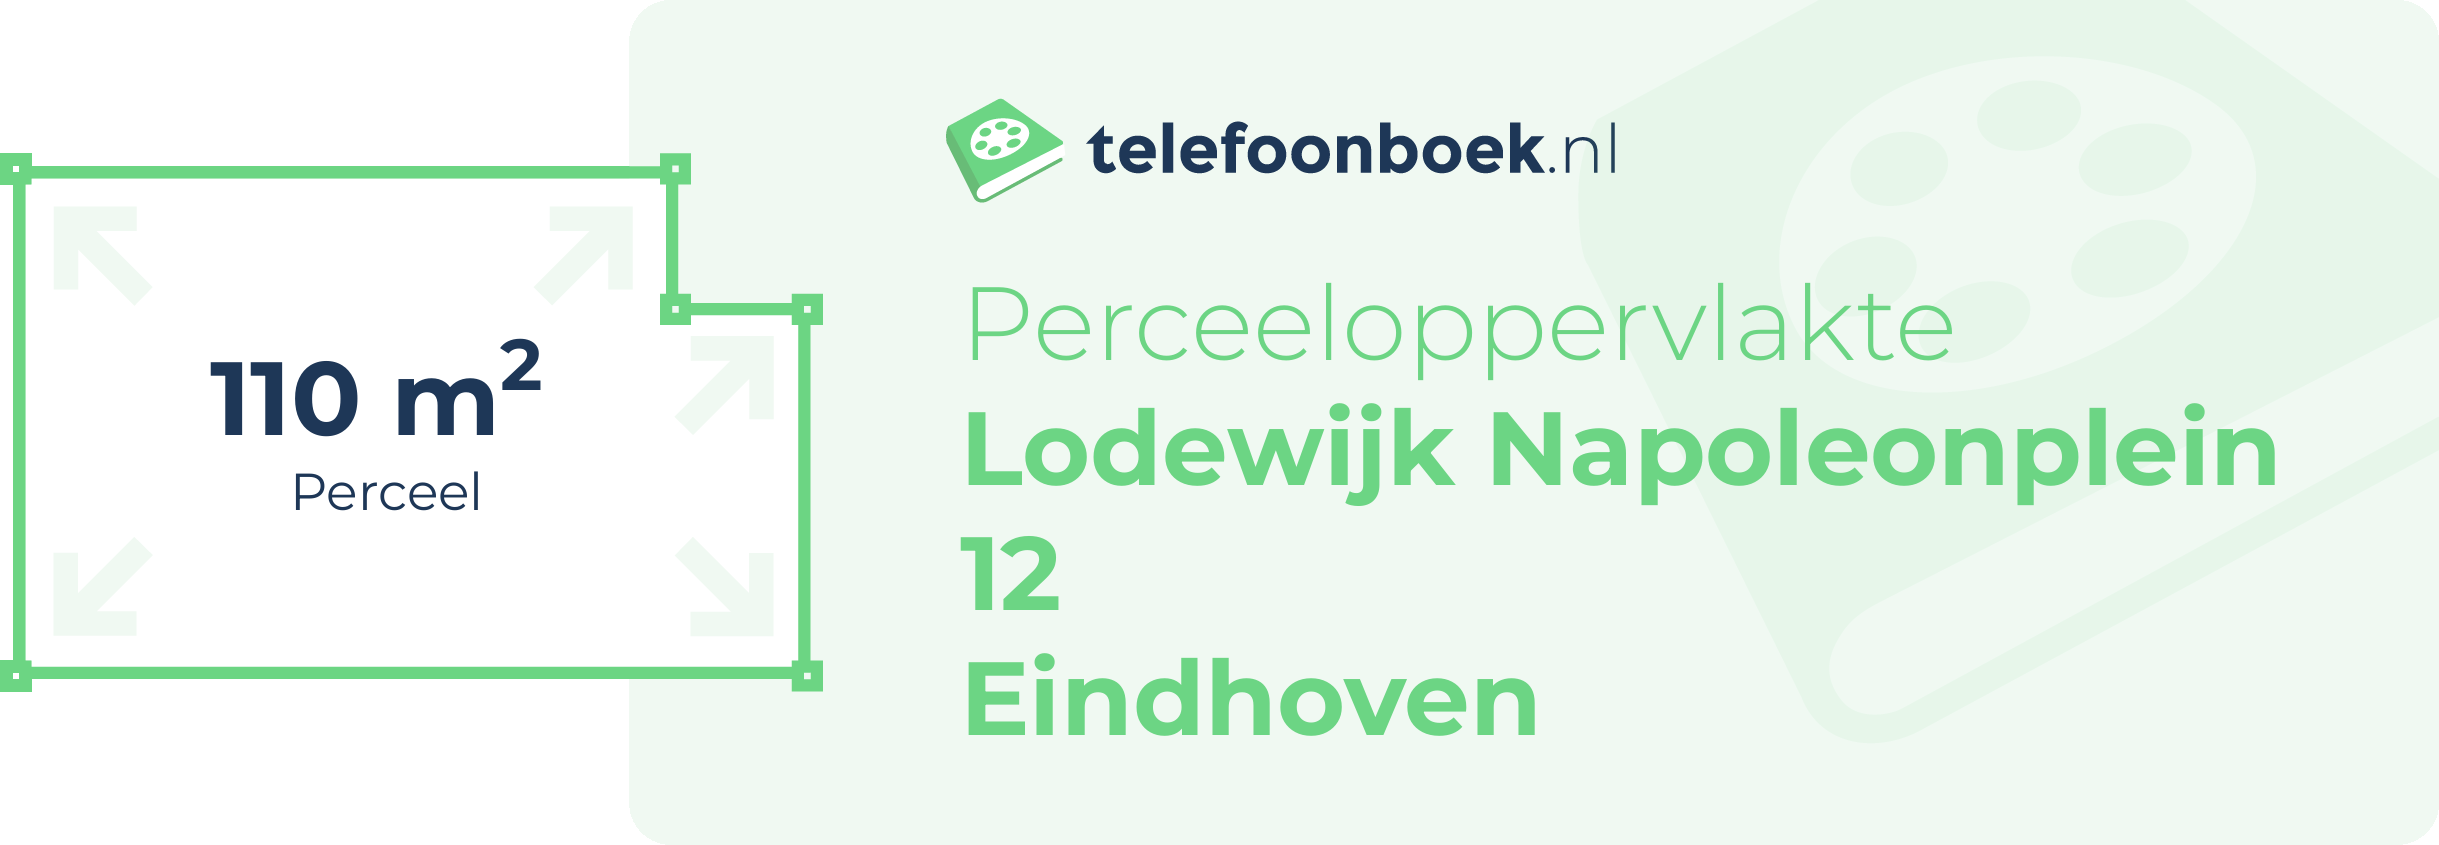 Perceeloppervlakte Lodewijk Napoleonplein 12 Eindhoven